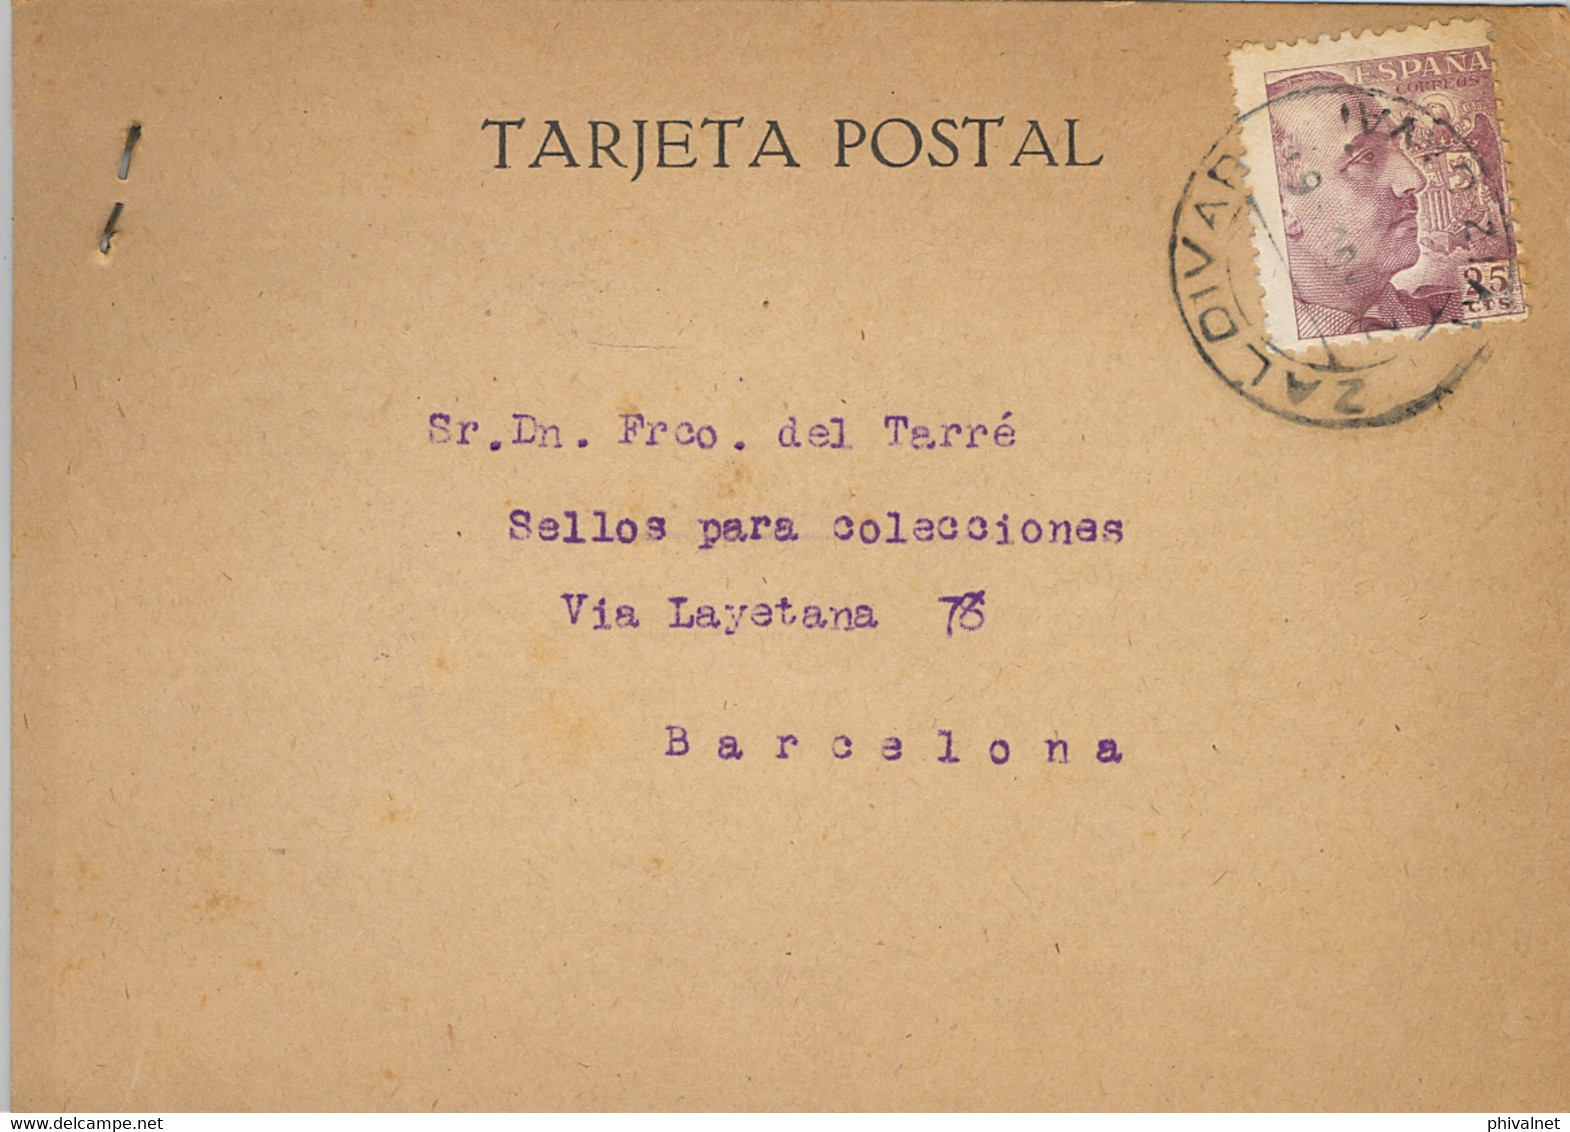 1946 VIZCAYA , T.P. CIRCULADA ENTRE ZALDIVAR Y BARCELONA , DIRIGIDA A FRANCISCO DEL TARRÉ - Brieven En Documenten